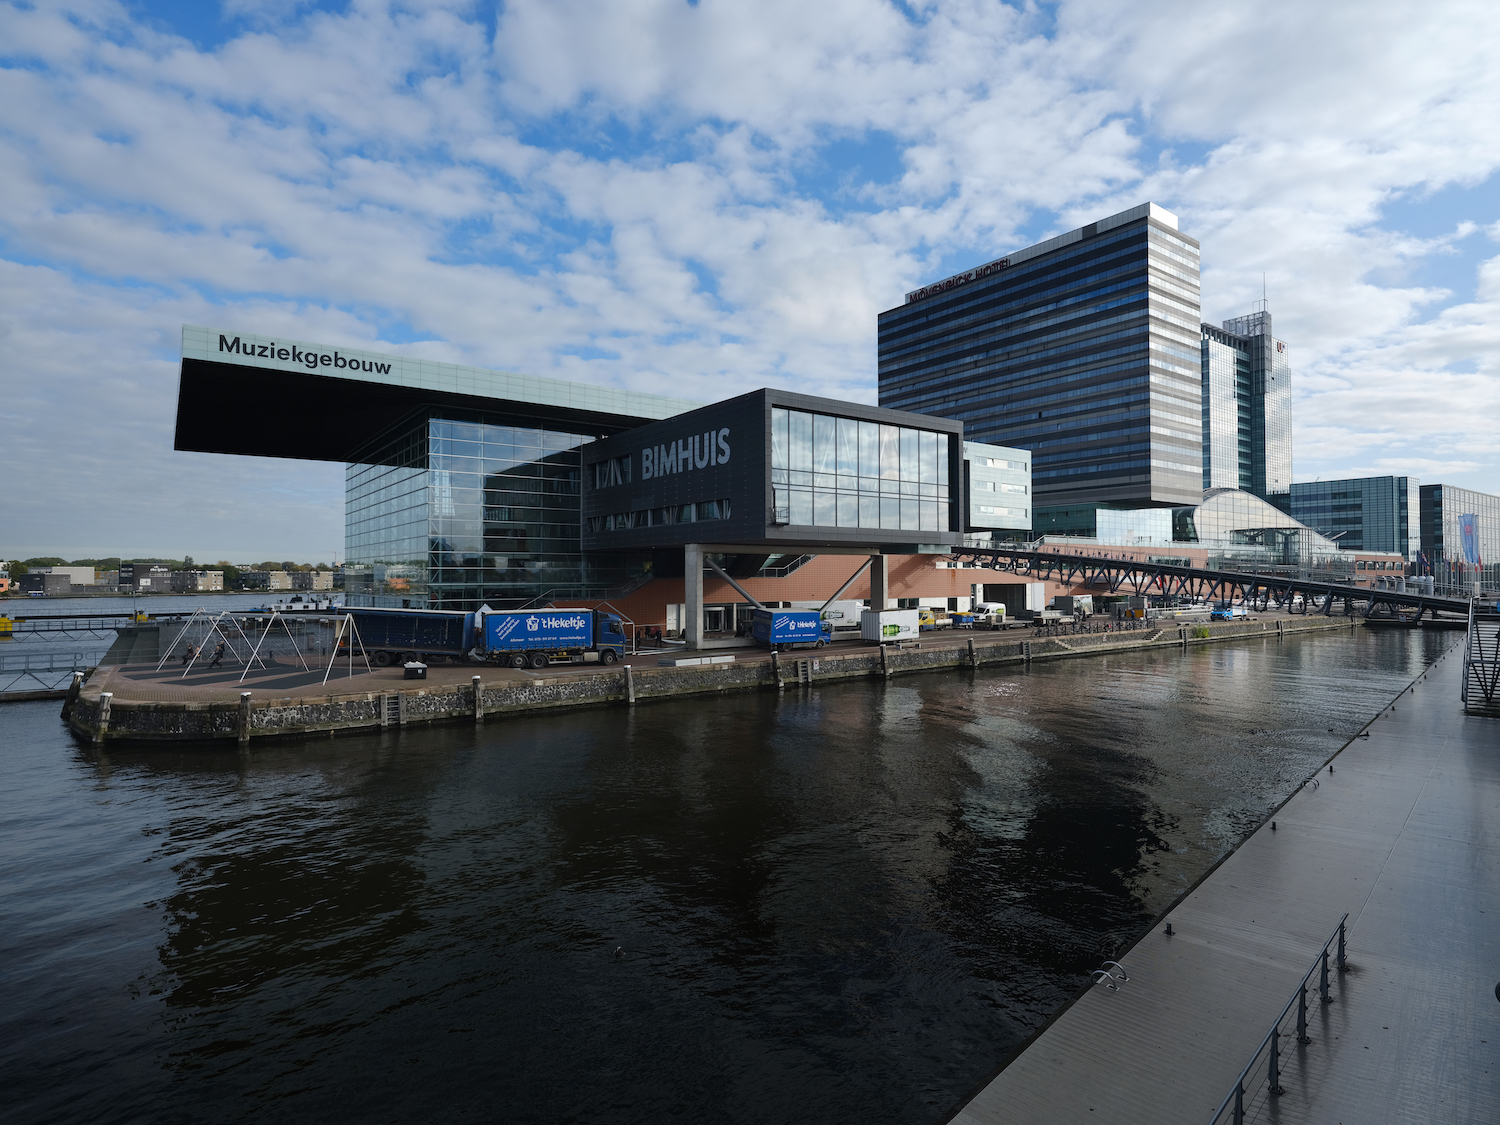 aan het 'Mooie referentie aan scheepsarchitectuur, PTA' - de Brug - nieuws uit Amsterdam Oost